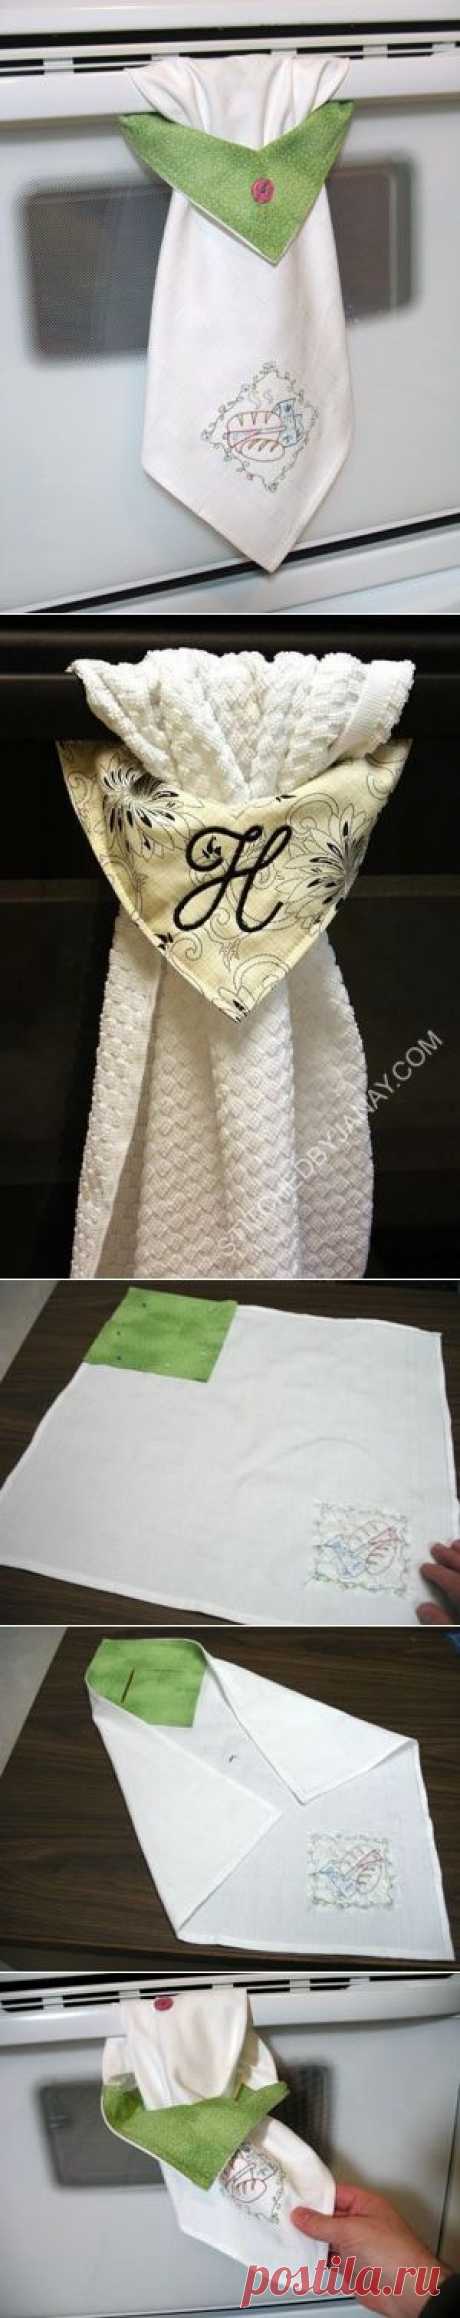 Хорошая идея для полотенца или декора